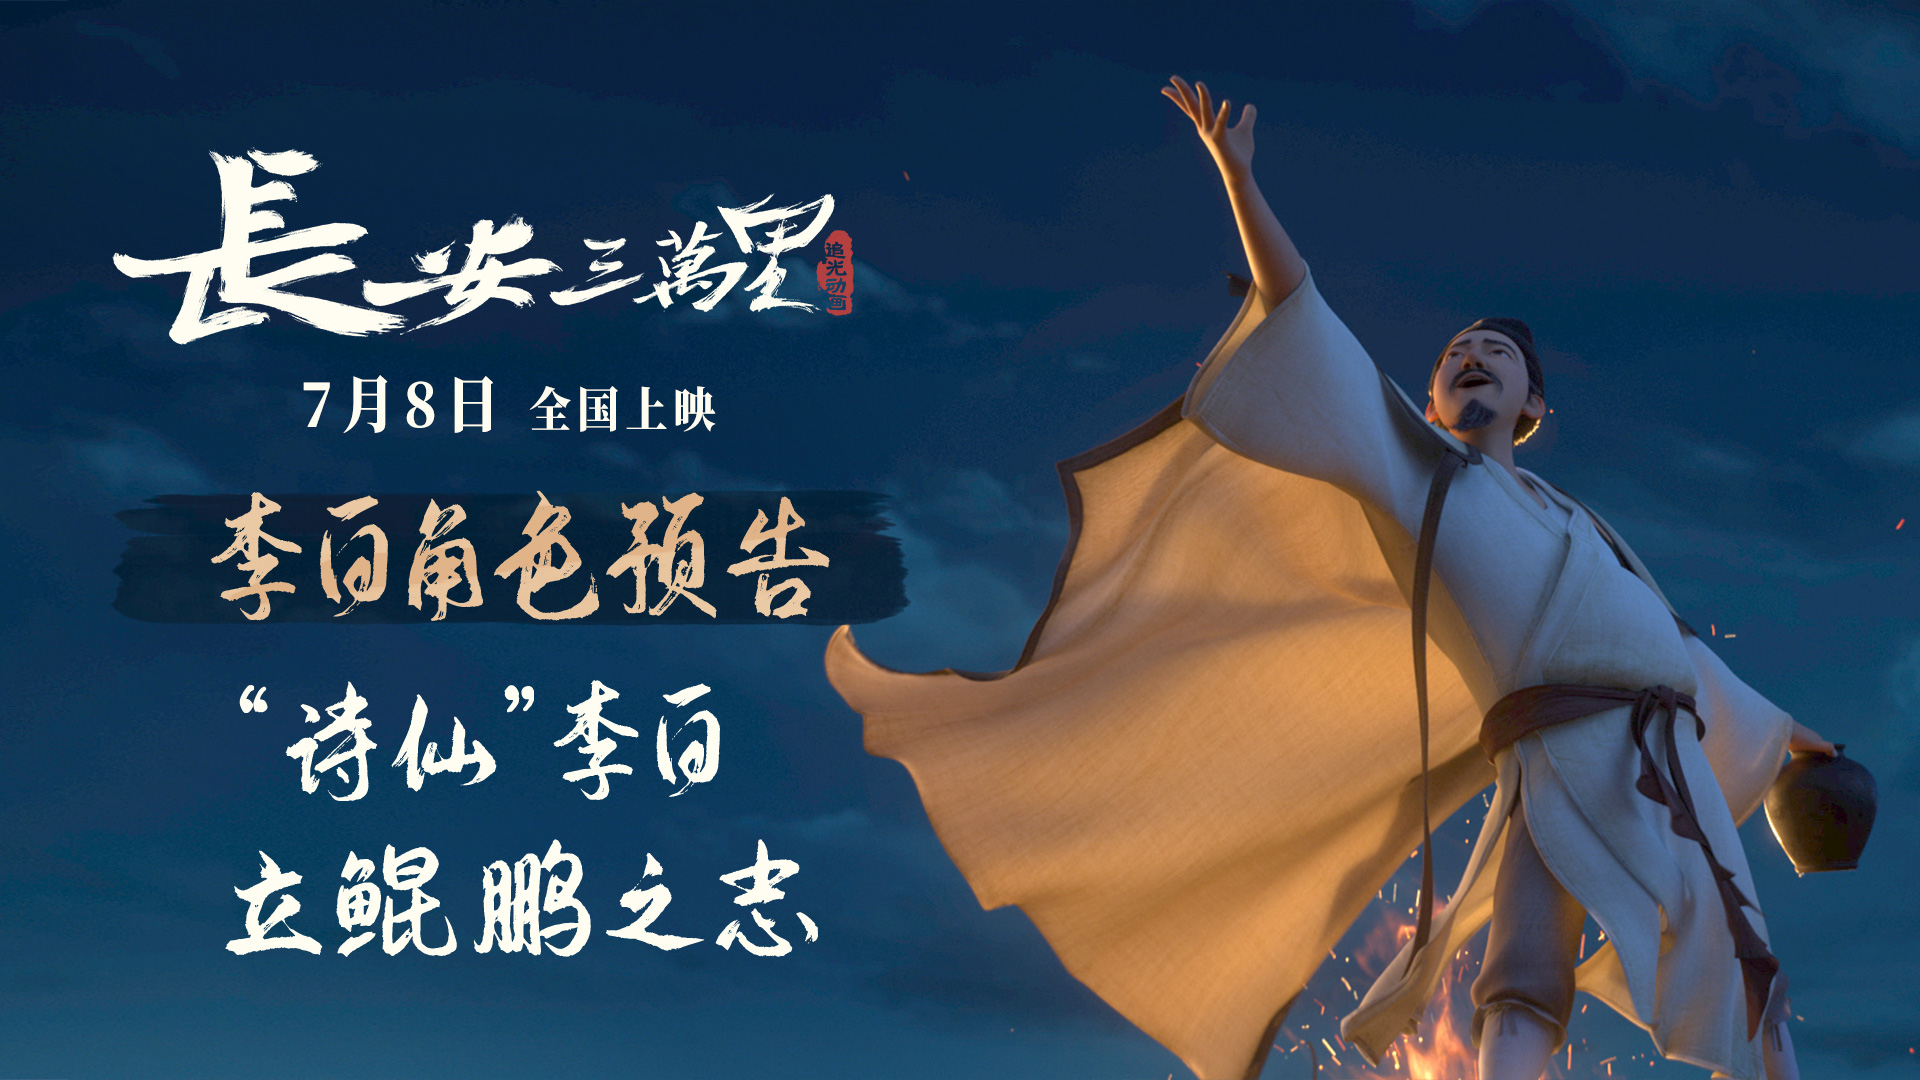 《长安三万里》曝李白角色预告 7月8日与“诗仙”同游壮美大唐